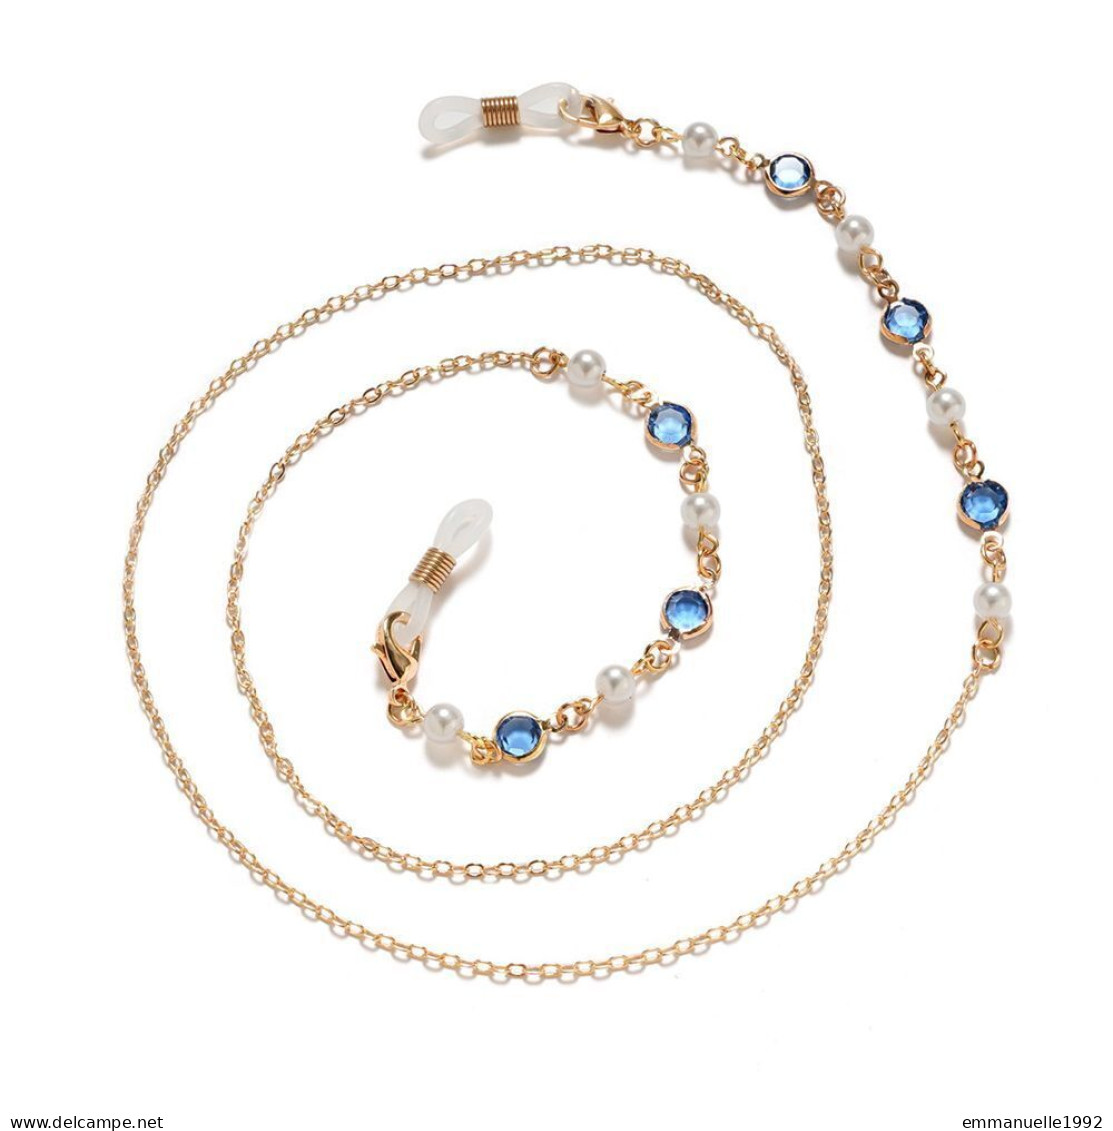 Cordon Chaine à lunettes métal doré cristaux bleu paon et perles fines imitation blanc nacré